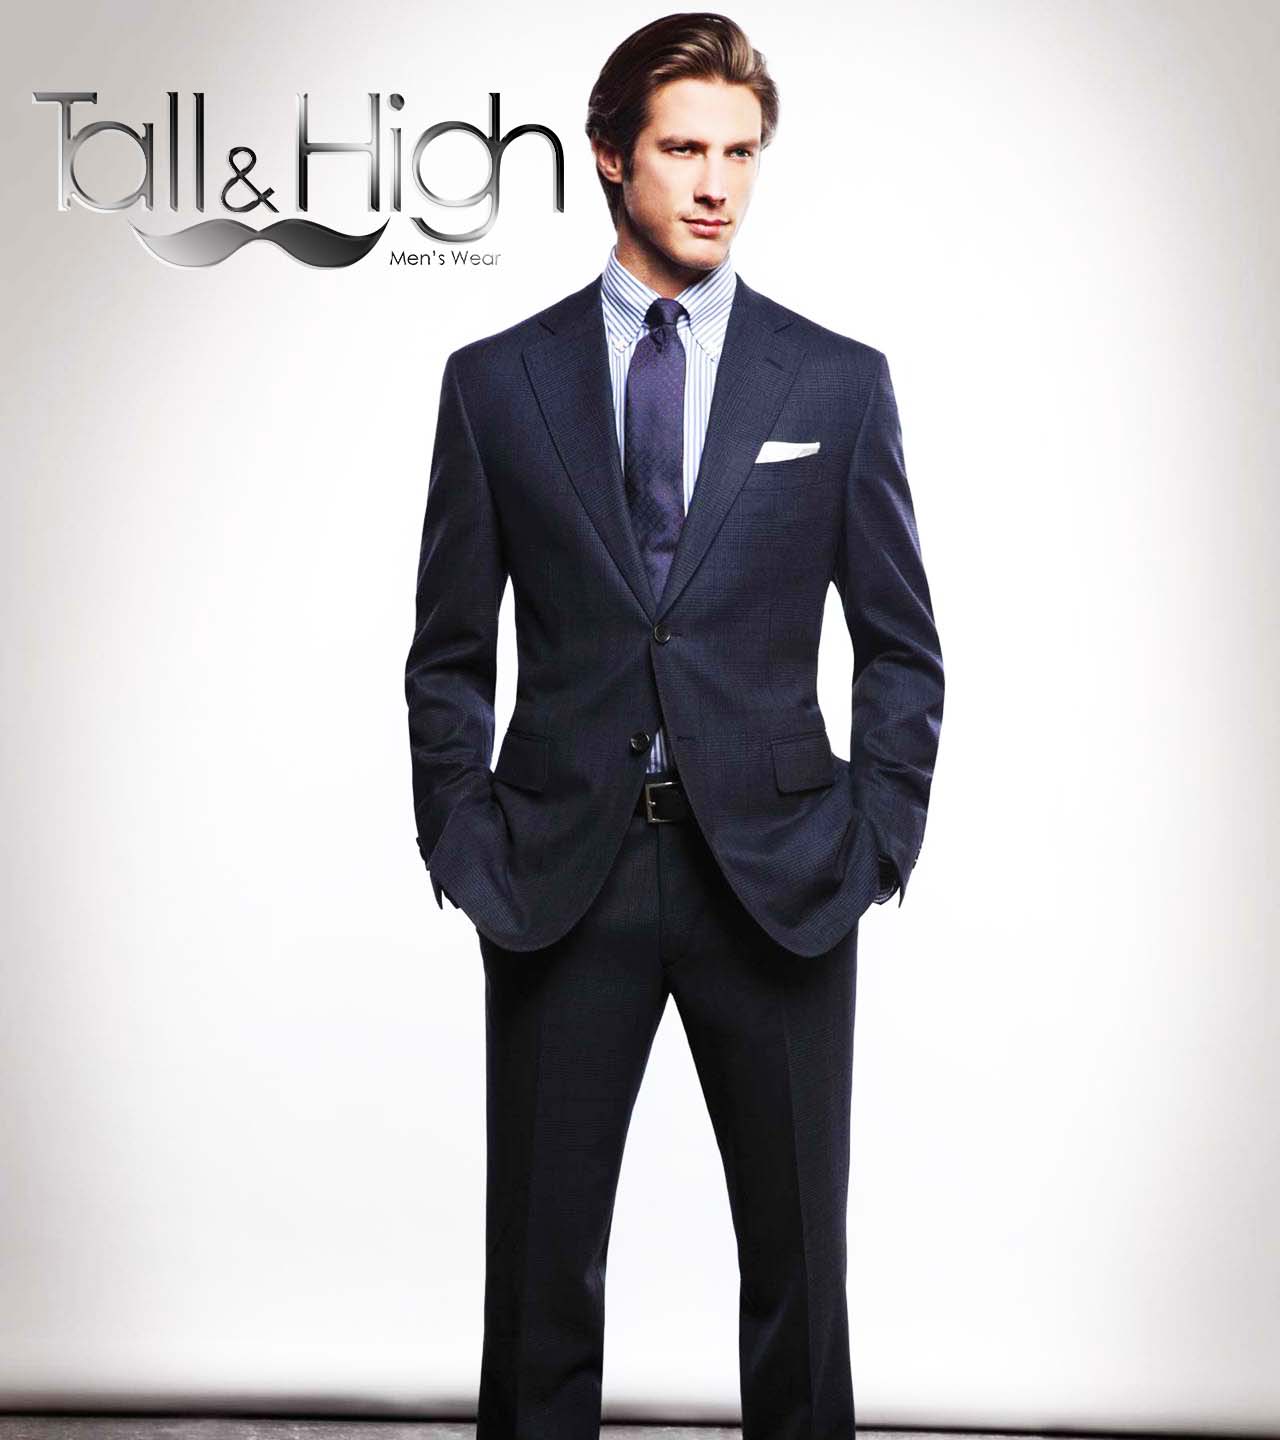 مشاوره برندینگ و برند دیزاین کمپانی پوشاک آقایان Tall & High - ایتالیا - پارت اول